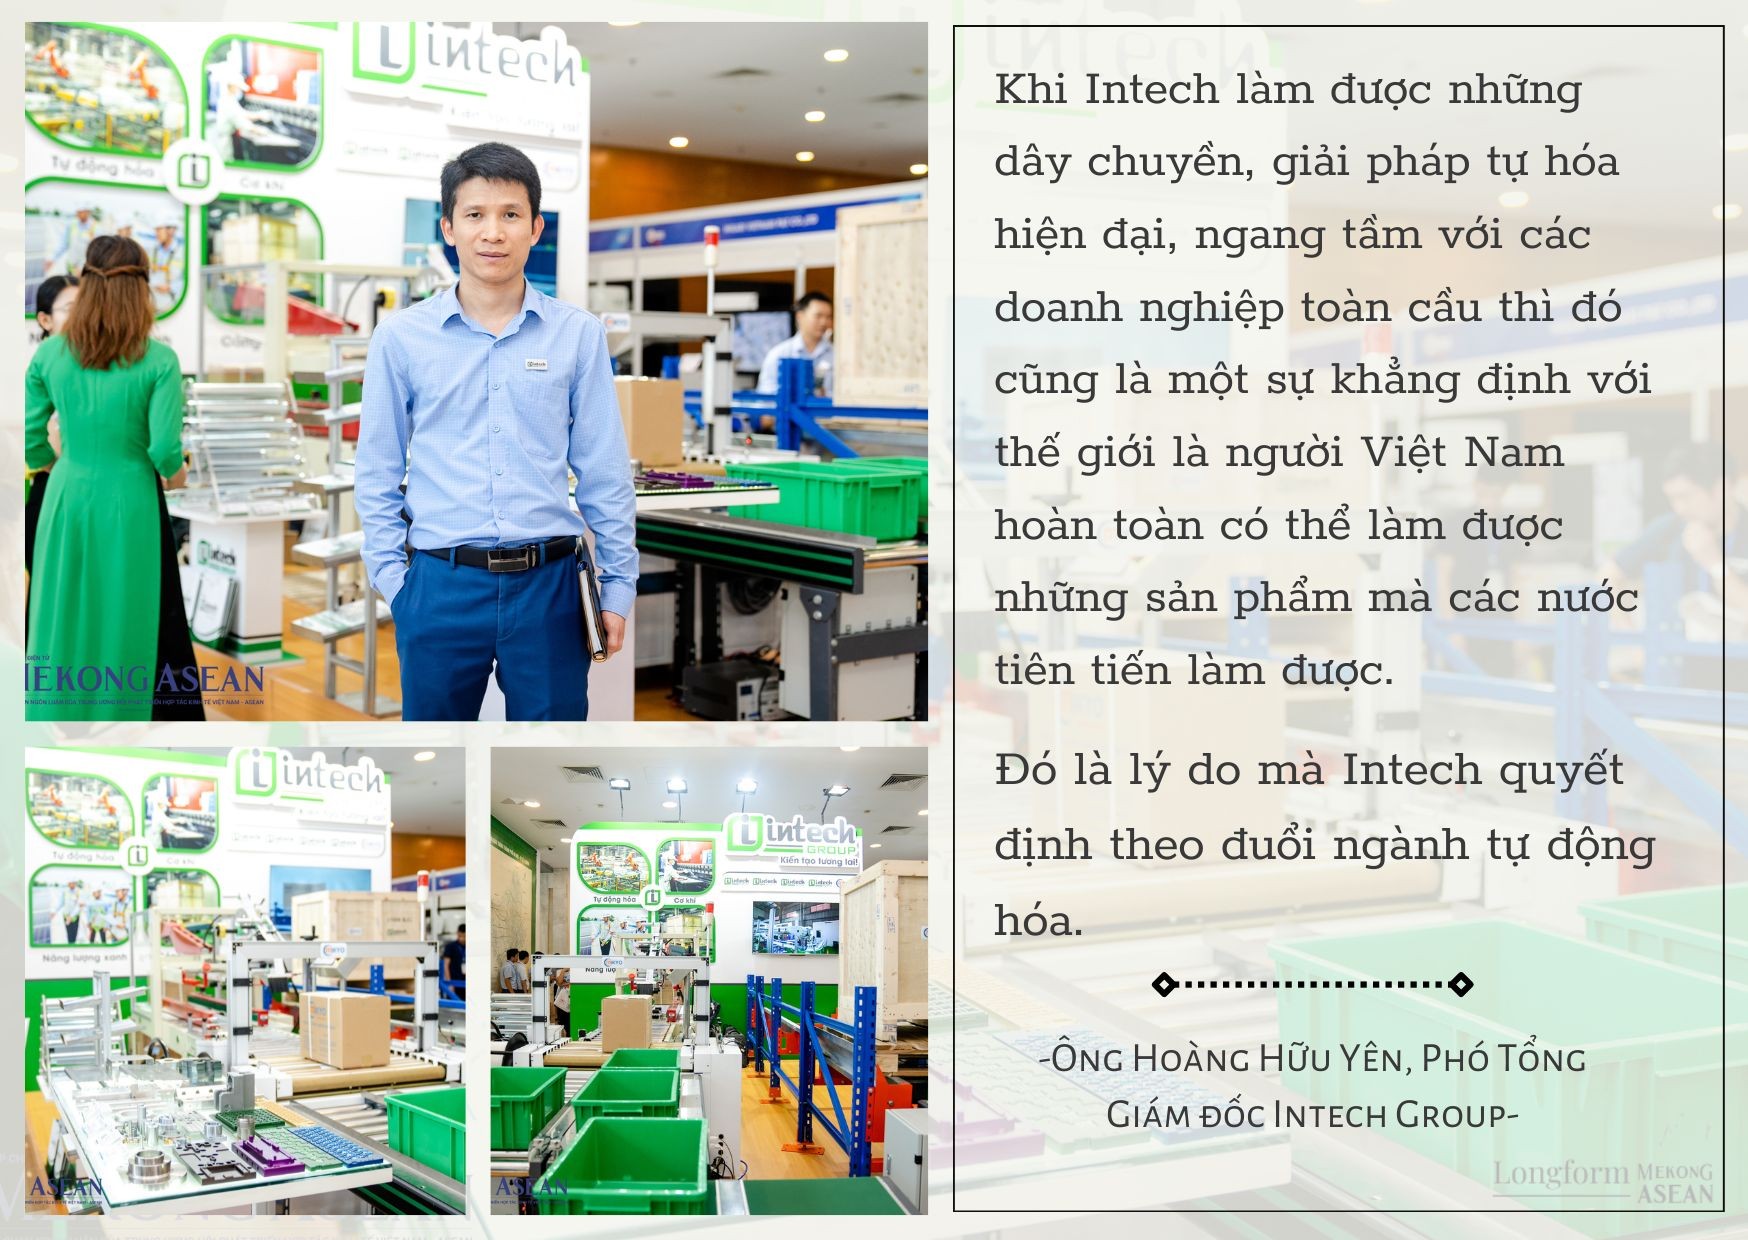 Cơ hội cho doanh nghiệp Việt trong 'miếng bánh' tự động hóa sản xuất